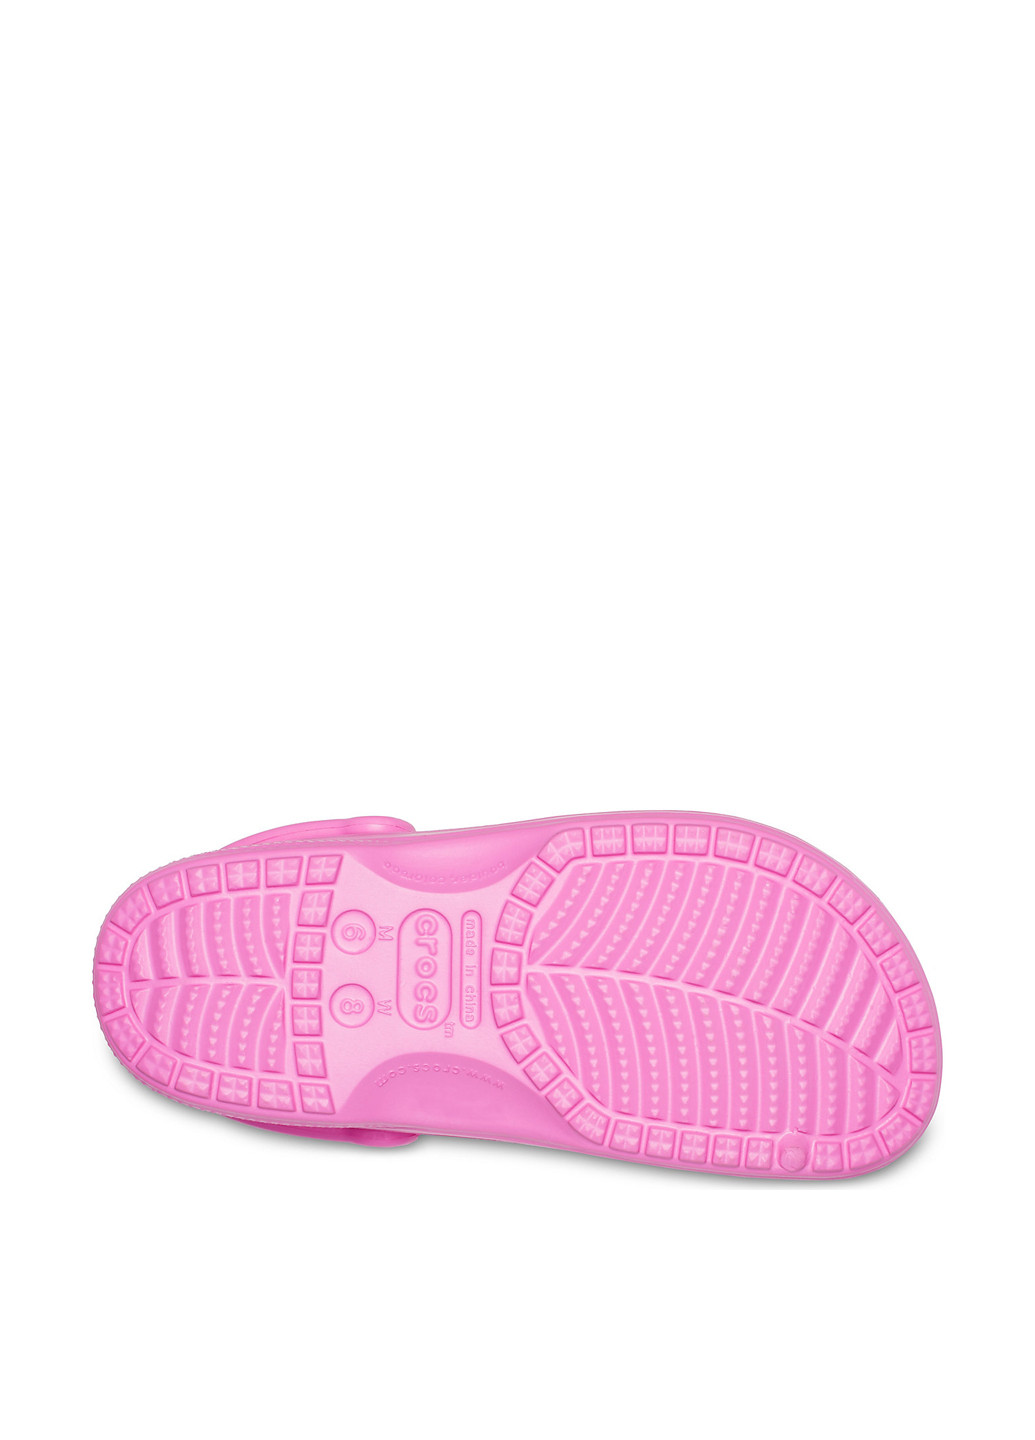 Розовые сабо Crocs без каблука с перфорацией